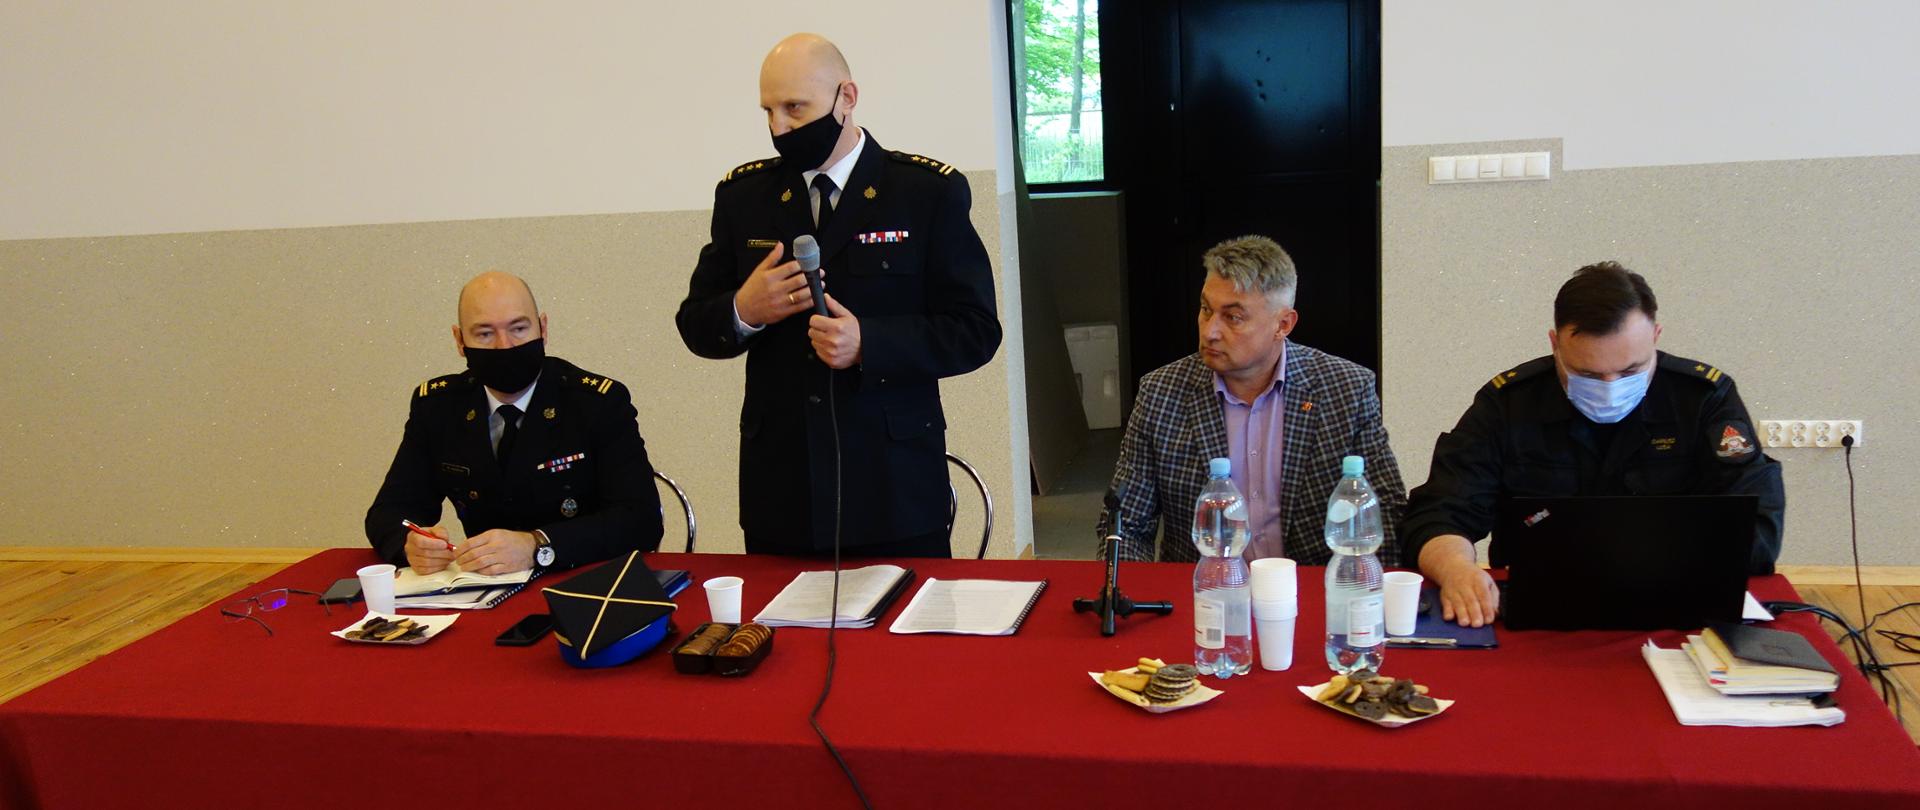 Przy stole nakrytym czerwonym obrusem siedzą Komendanci PSP w Kutnie z przedstawicielami OSP - w trakcie konsultacji. Stojąc przemawia trzymając mikrofon Komendant Powiatowy Państwowej Straży Pożarnej w mundurze wyjściowym.